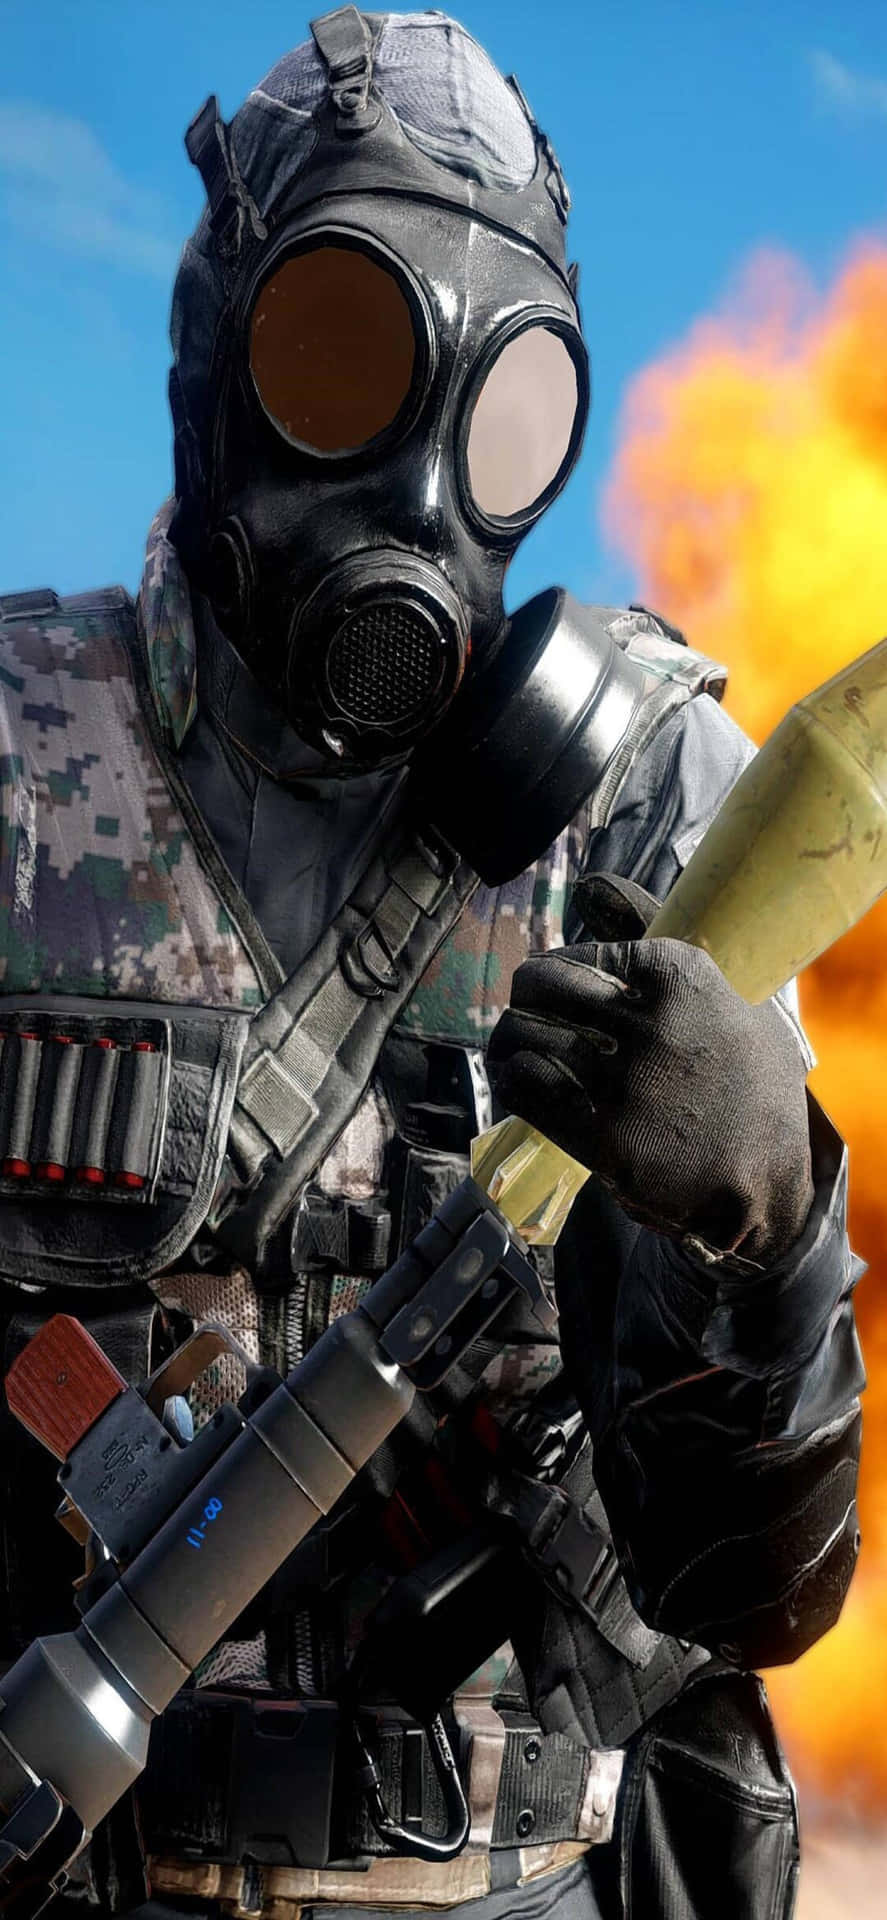 Iphonexs Bakgrund Med Battlefield 4 Explosion Och Soldat